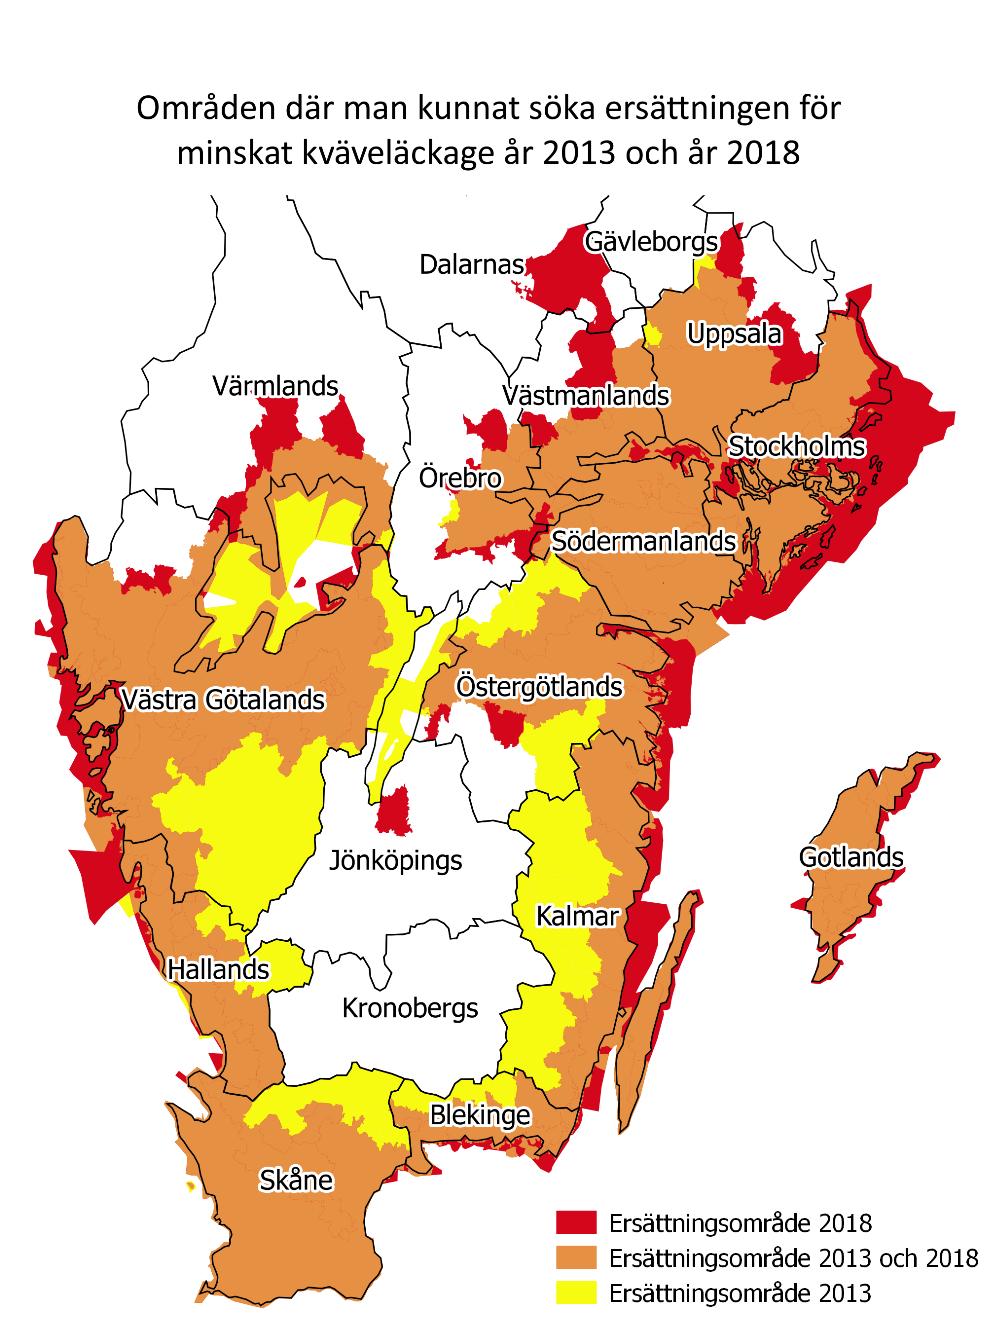 Figur 2 Kartan visar området där man kan få miljöersättning för minskat kväveläckage i programperiod 2014 2020, i rött och orange. Detta är nitratkänsligt område.